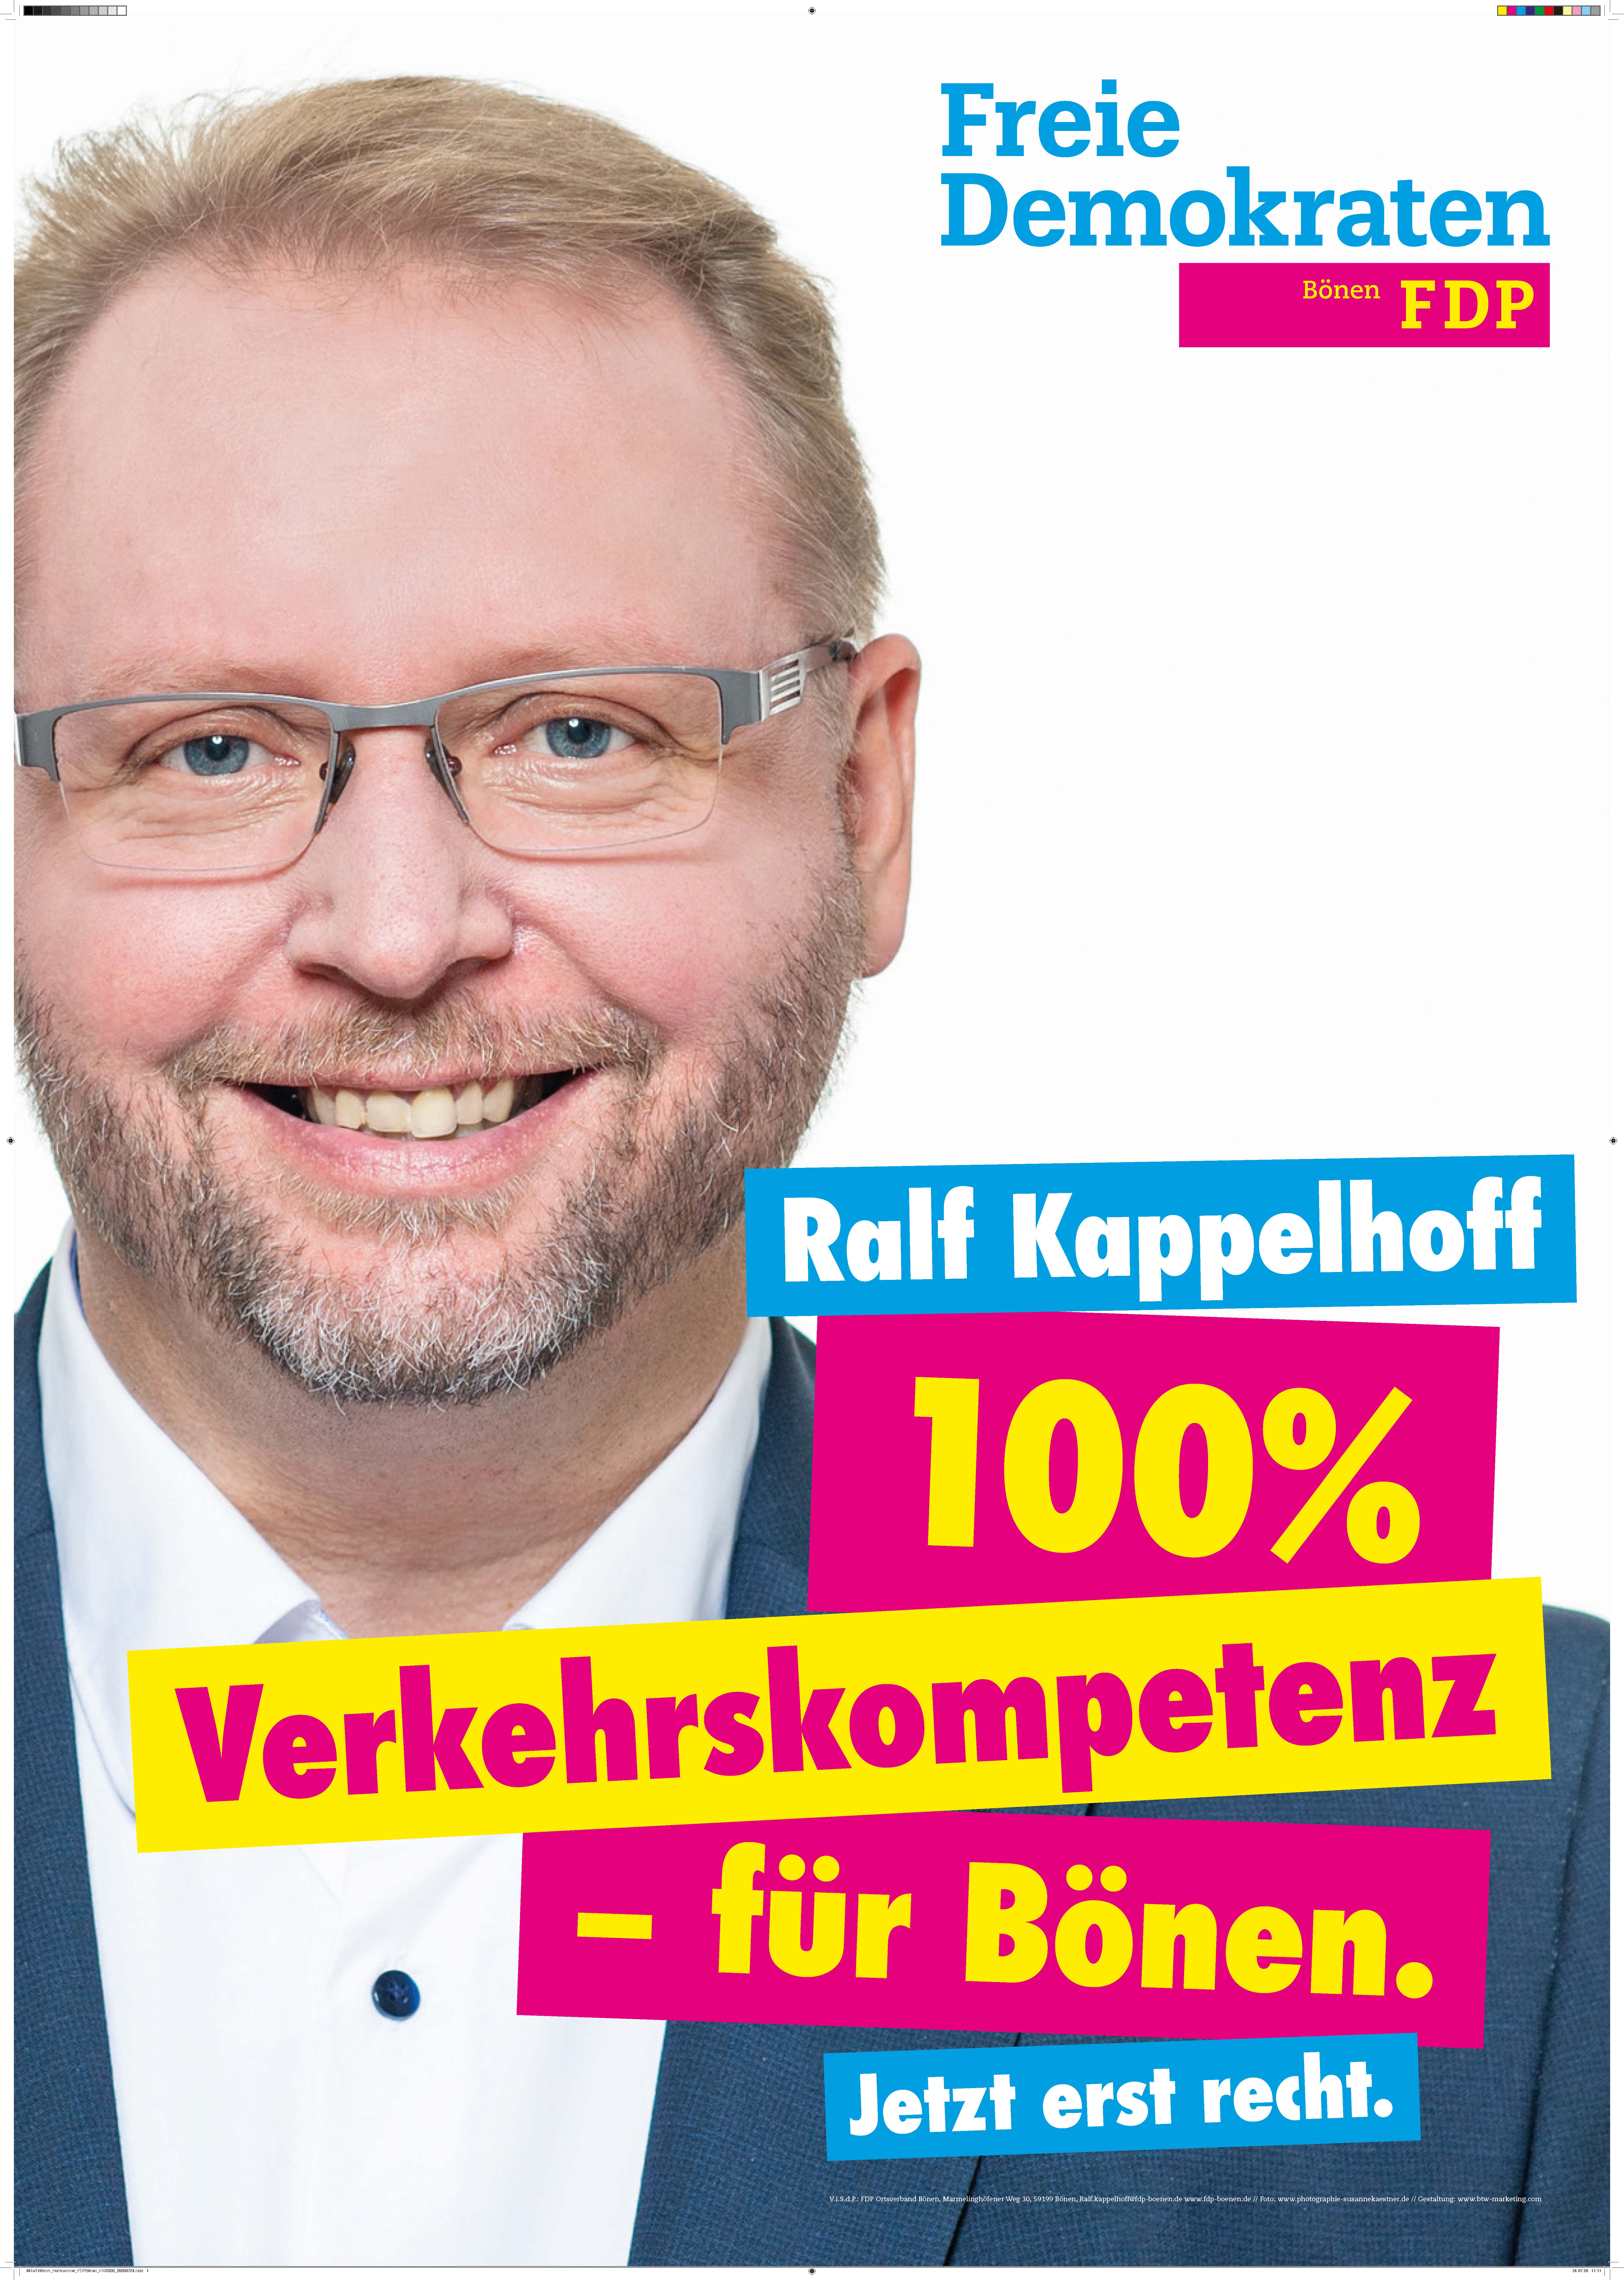 Ralf Kappelhoff - 100% Verkehrskompetenz für Bönen